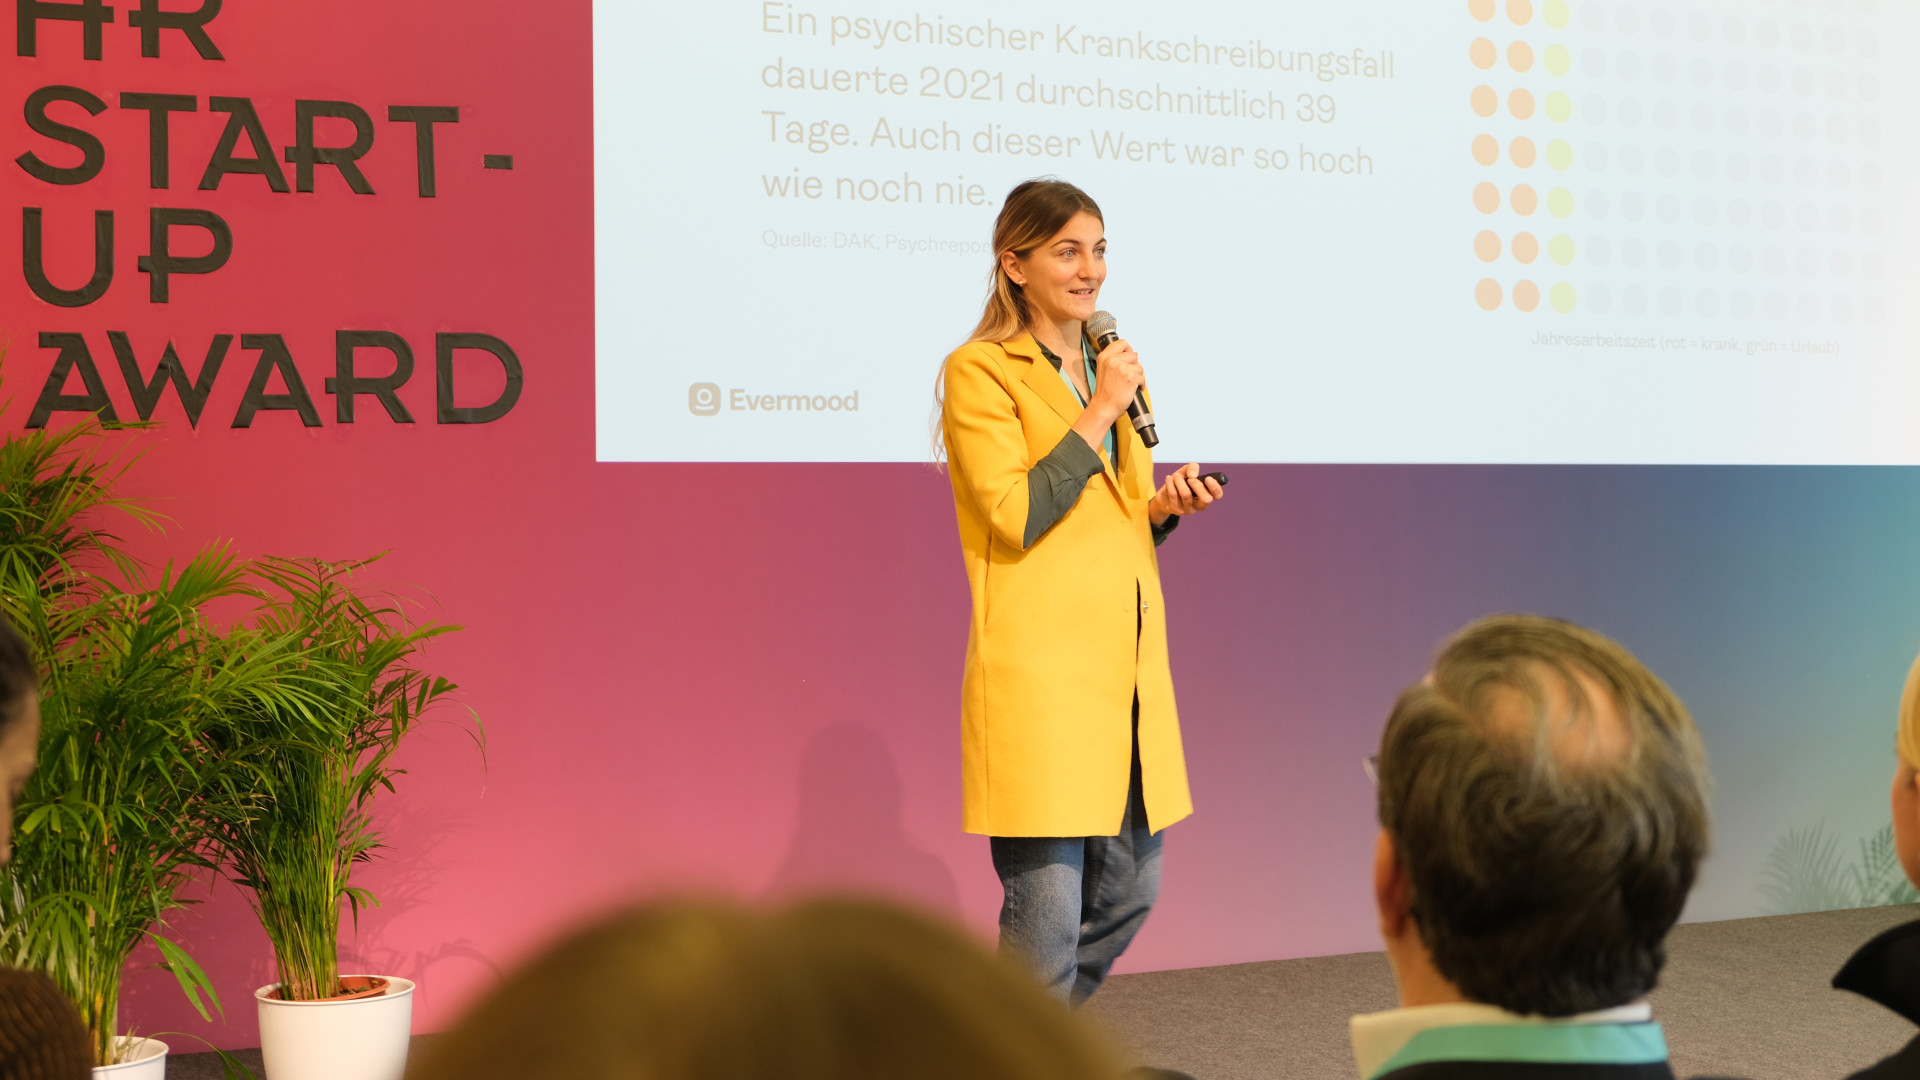 Lara von Petersdorff-Campen, Gründerin von Evermood, auf der Bühne des HR Start-up Awards 2022